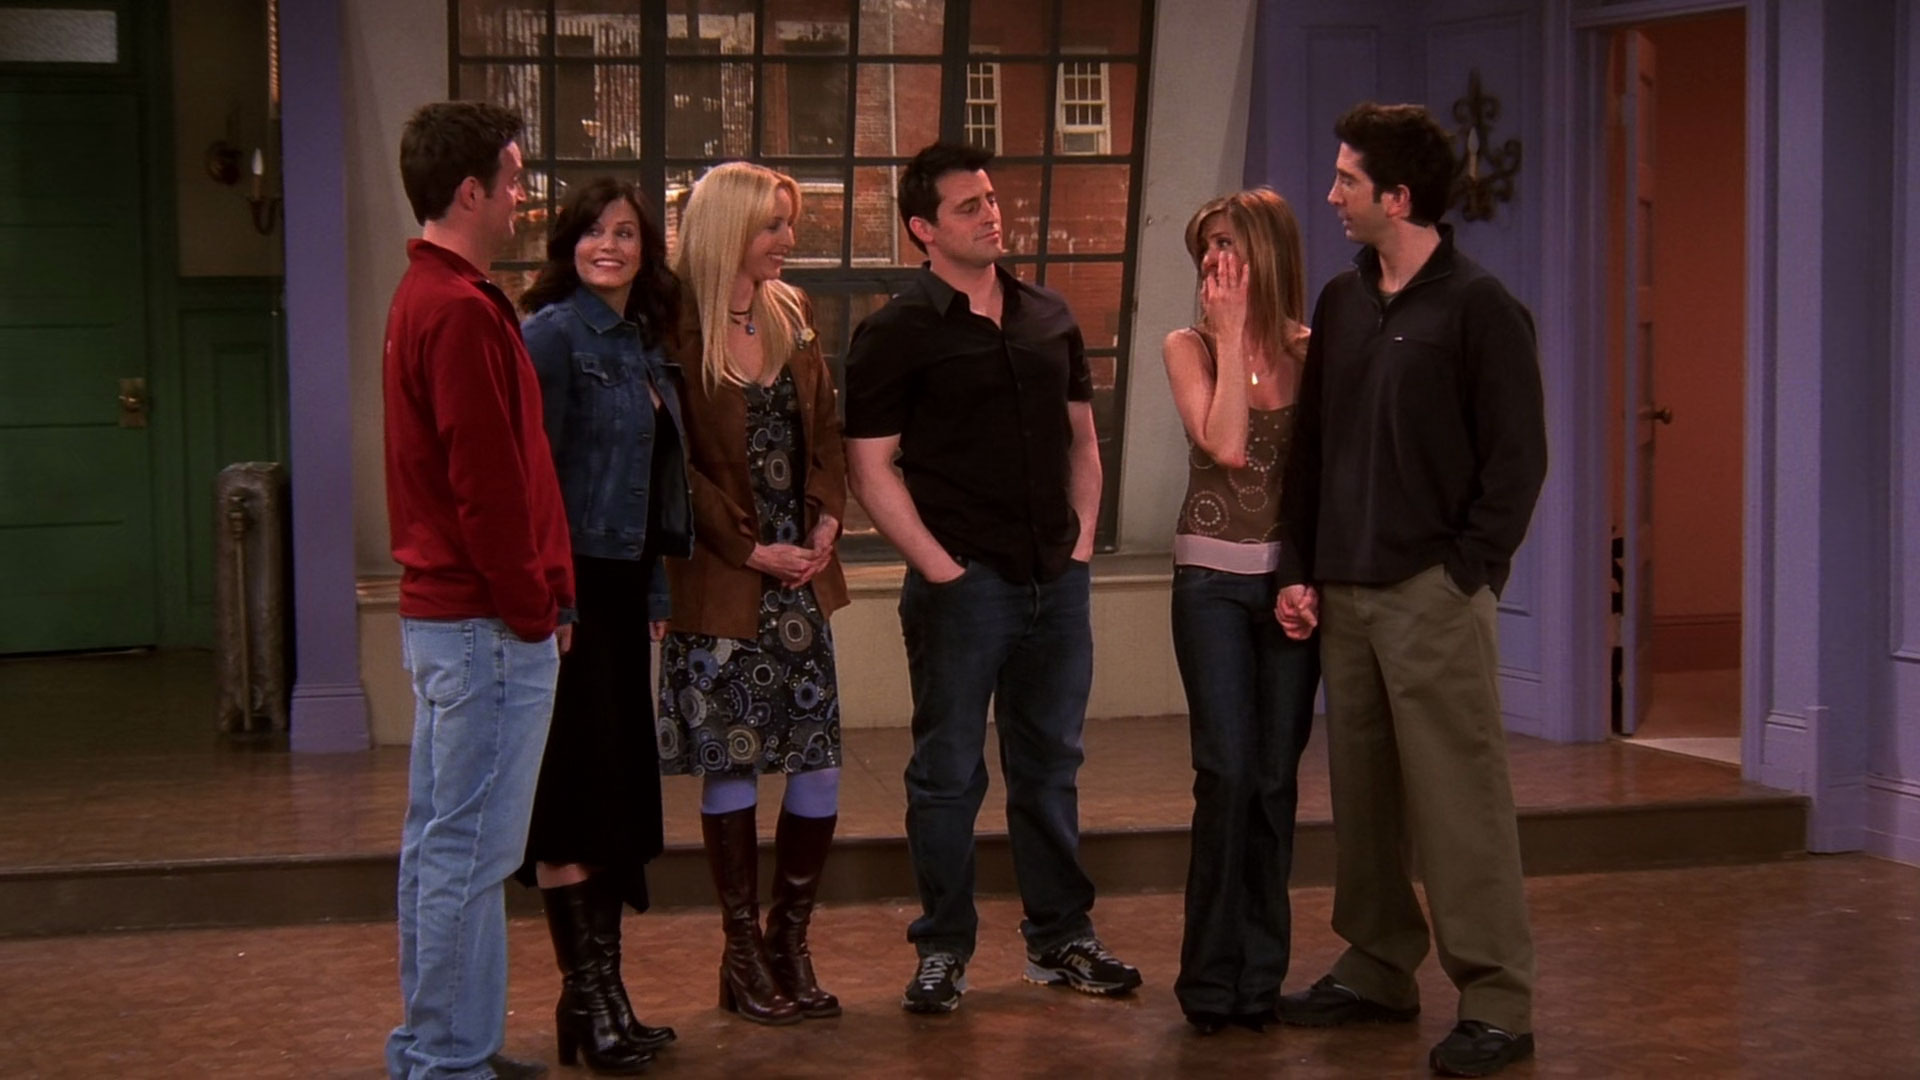 The final scene of Friends